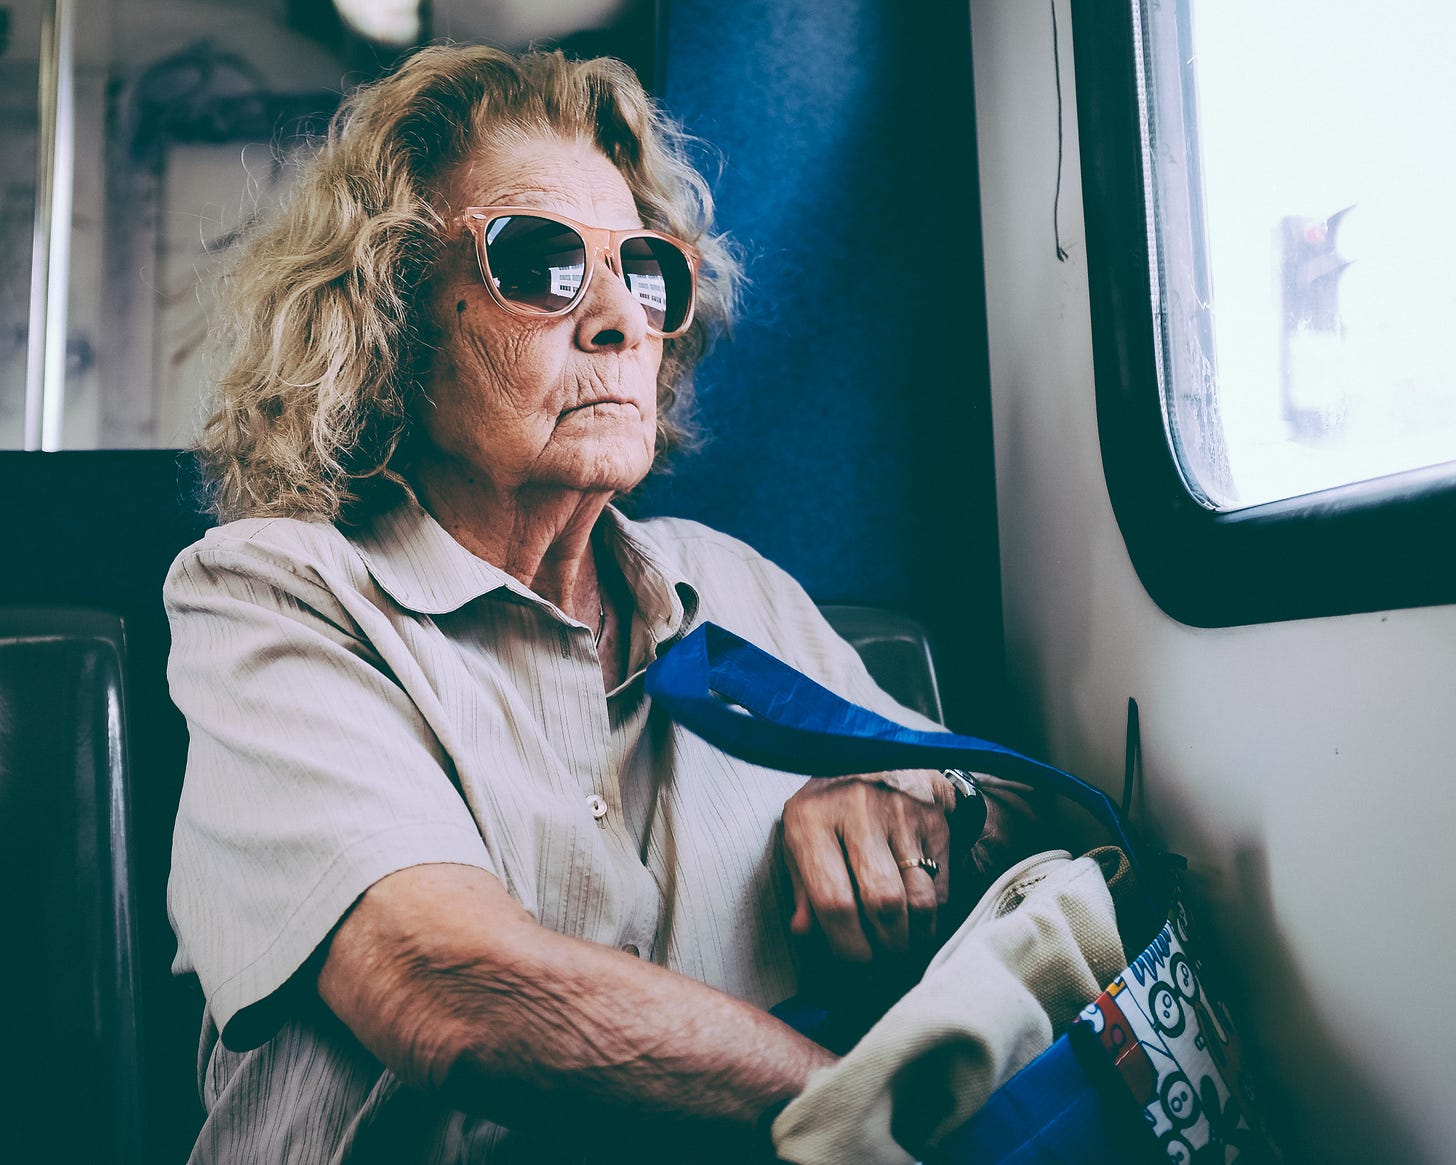 Imagem: retrato mulher idosa, cabelos loiros, óculos escuros olhando na janela de um ônibus